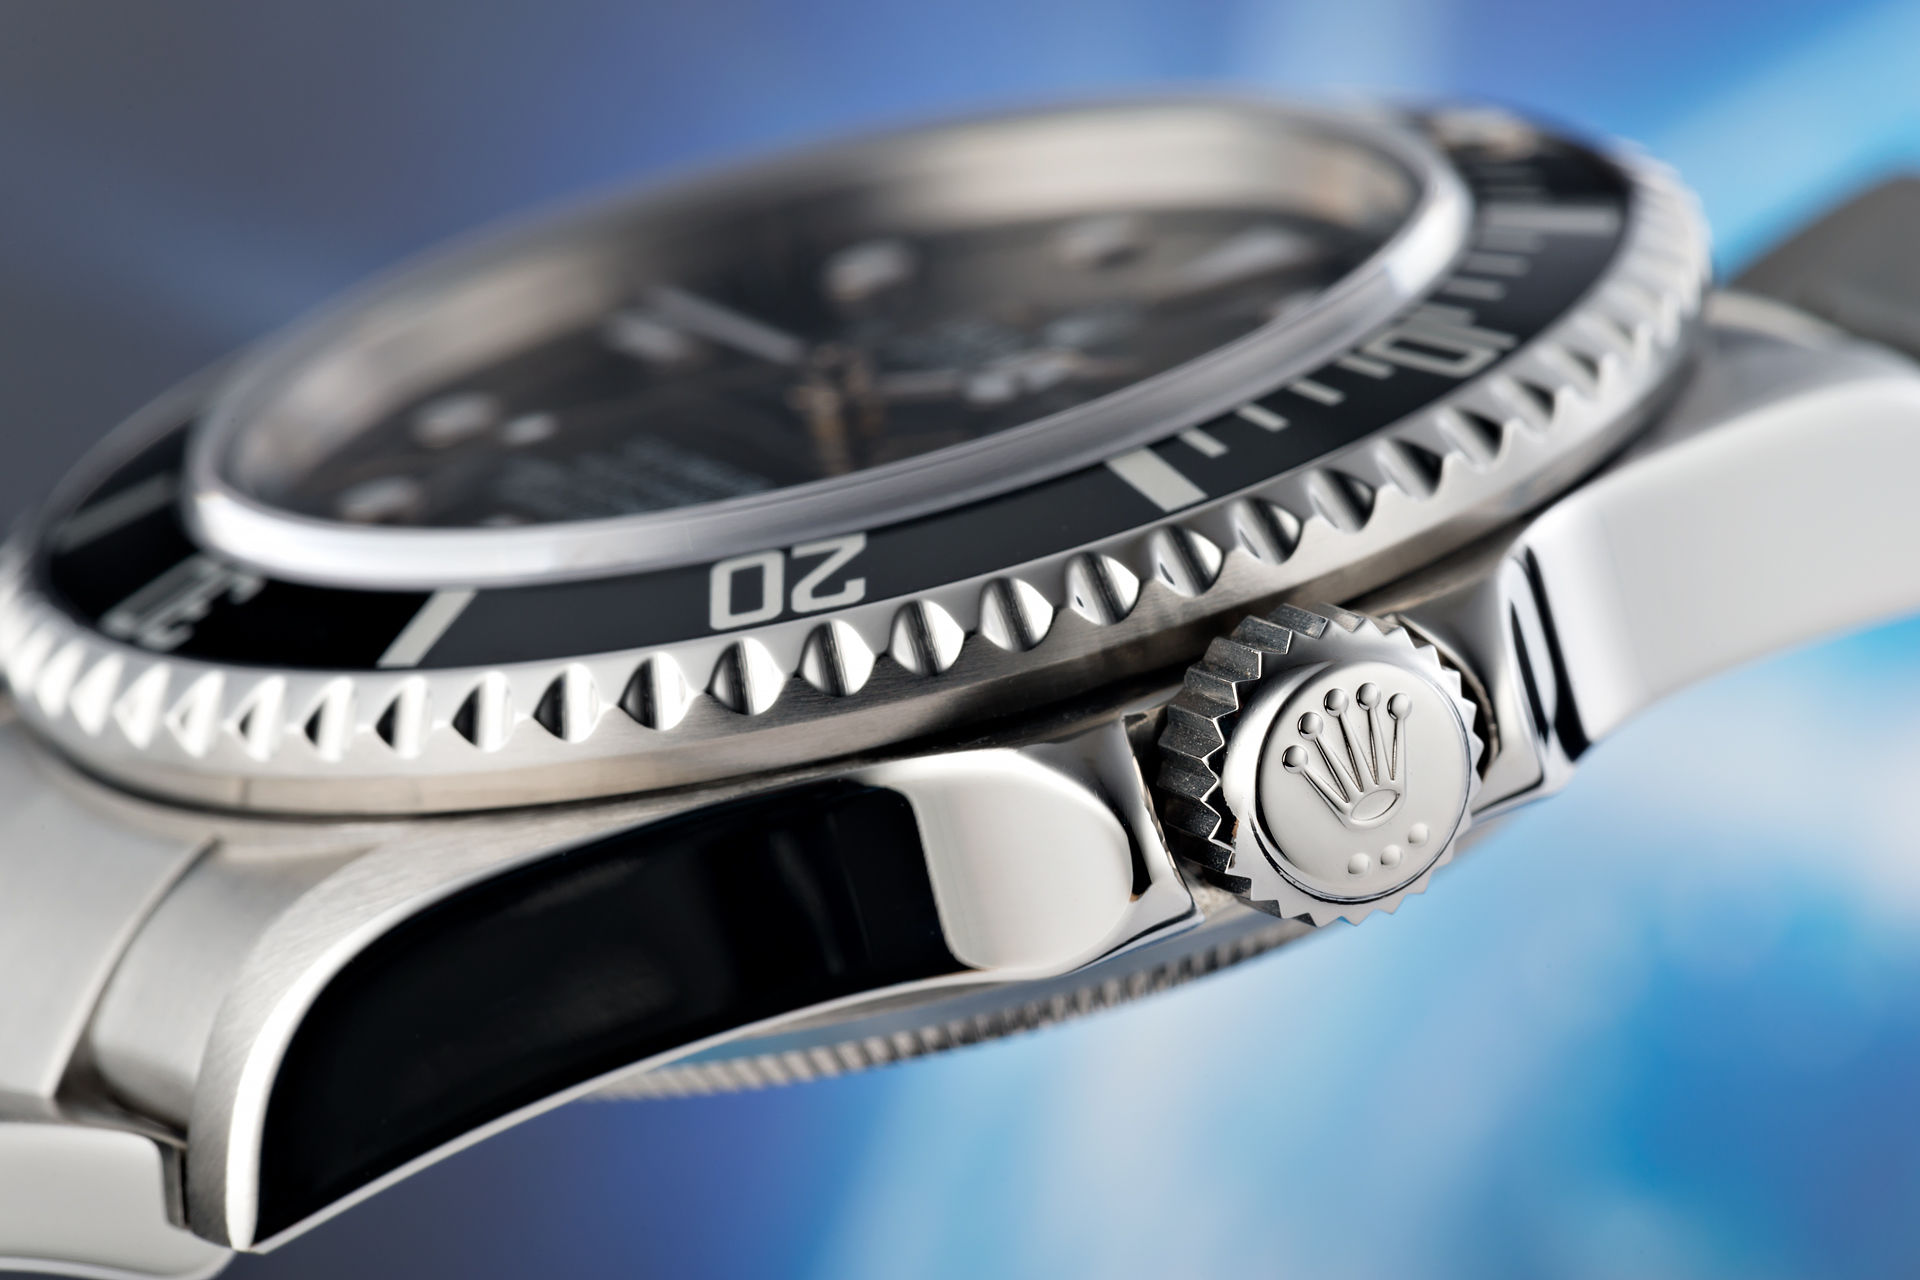 ref 16600 | 2 Year Rolex Service Warranty | Rolex Sea-Dweller